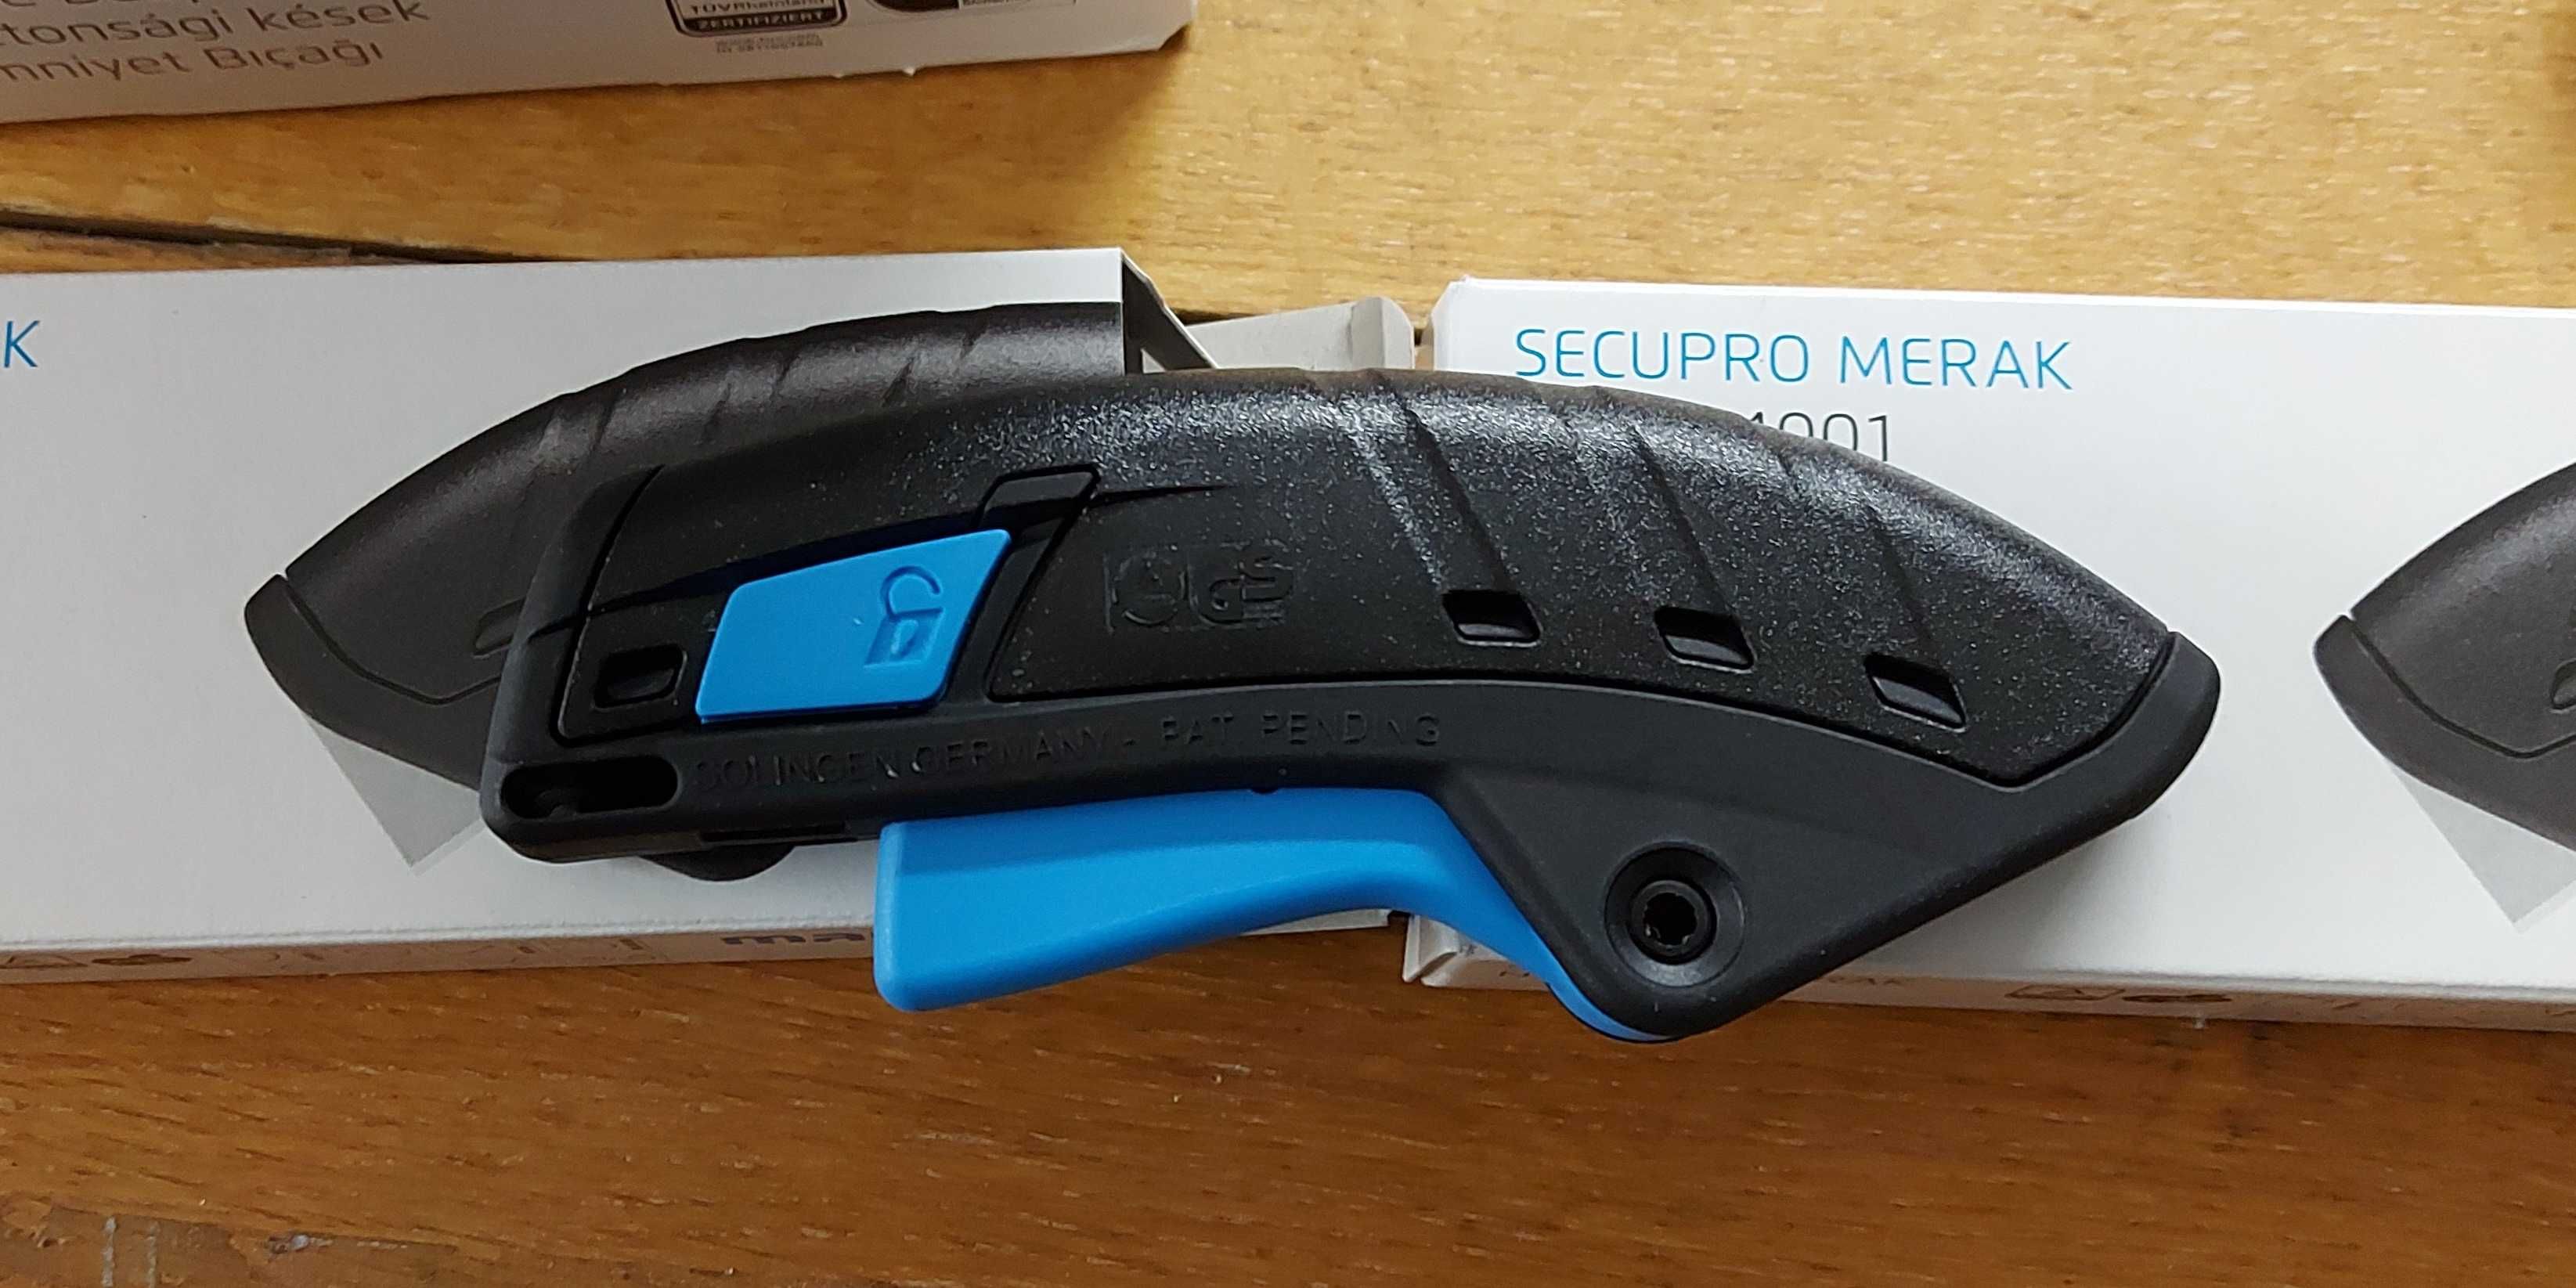 Nóż bezpieczny automatyczny  SECUPRO MERAK MARTOR  124001